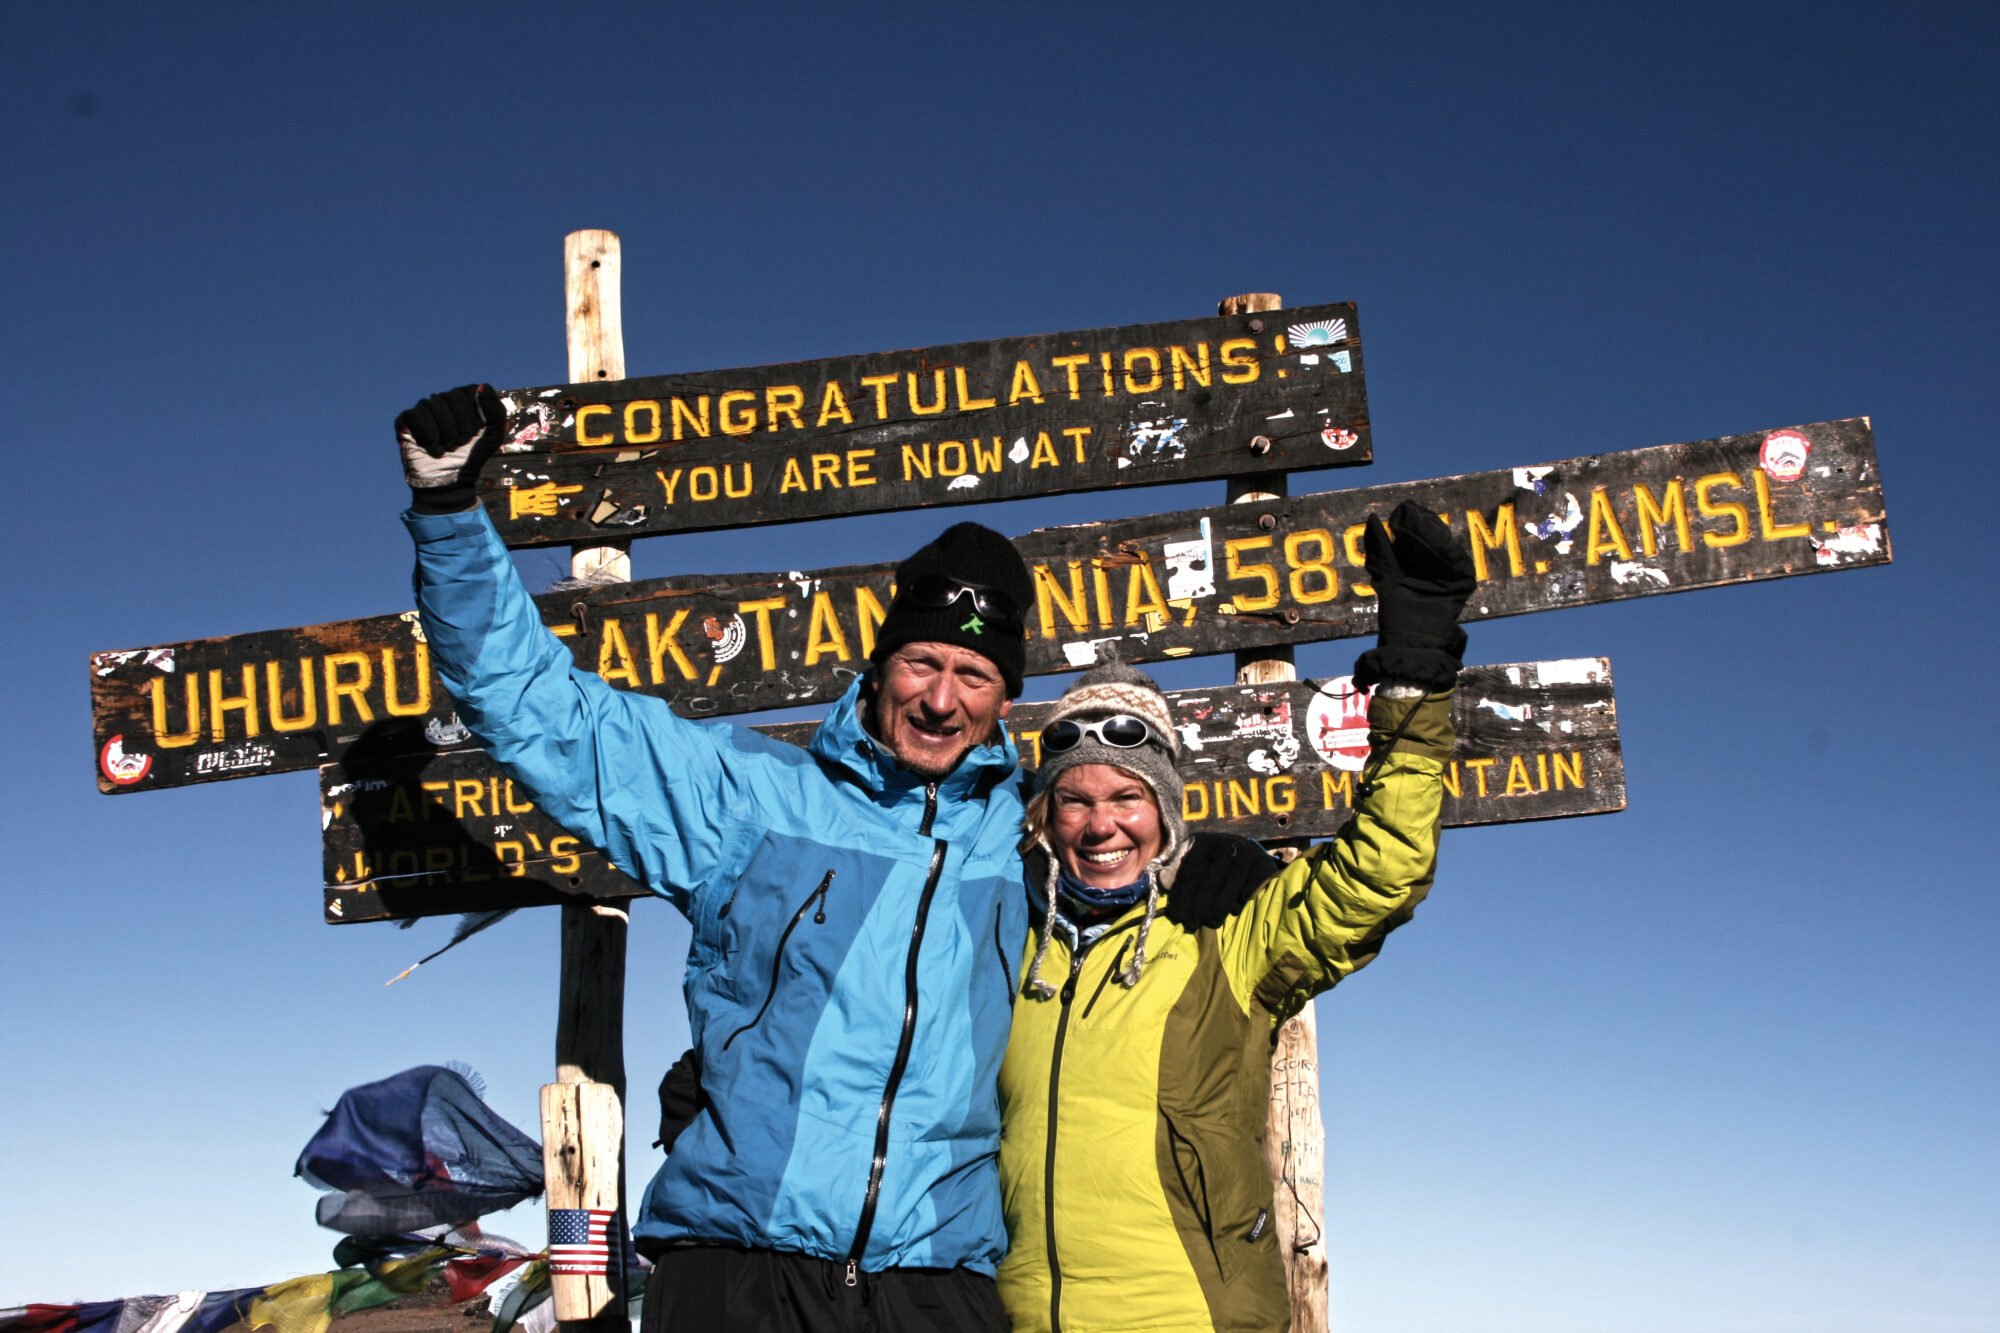 98% unserer Gäste erreichen den Gipfel des Kilimandscharo